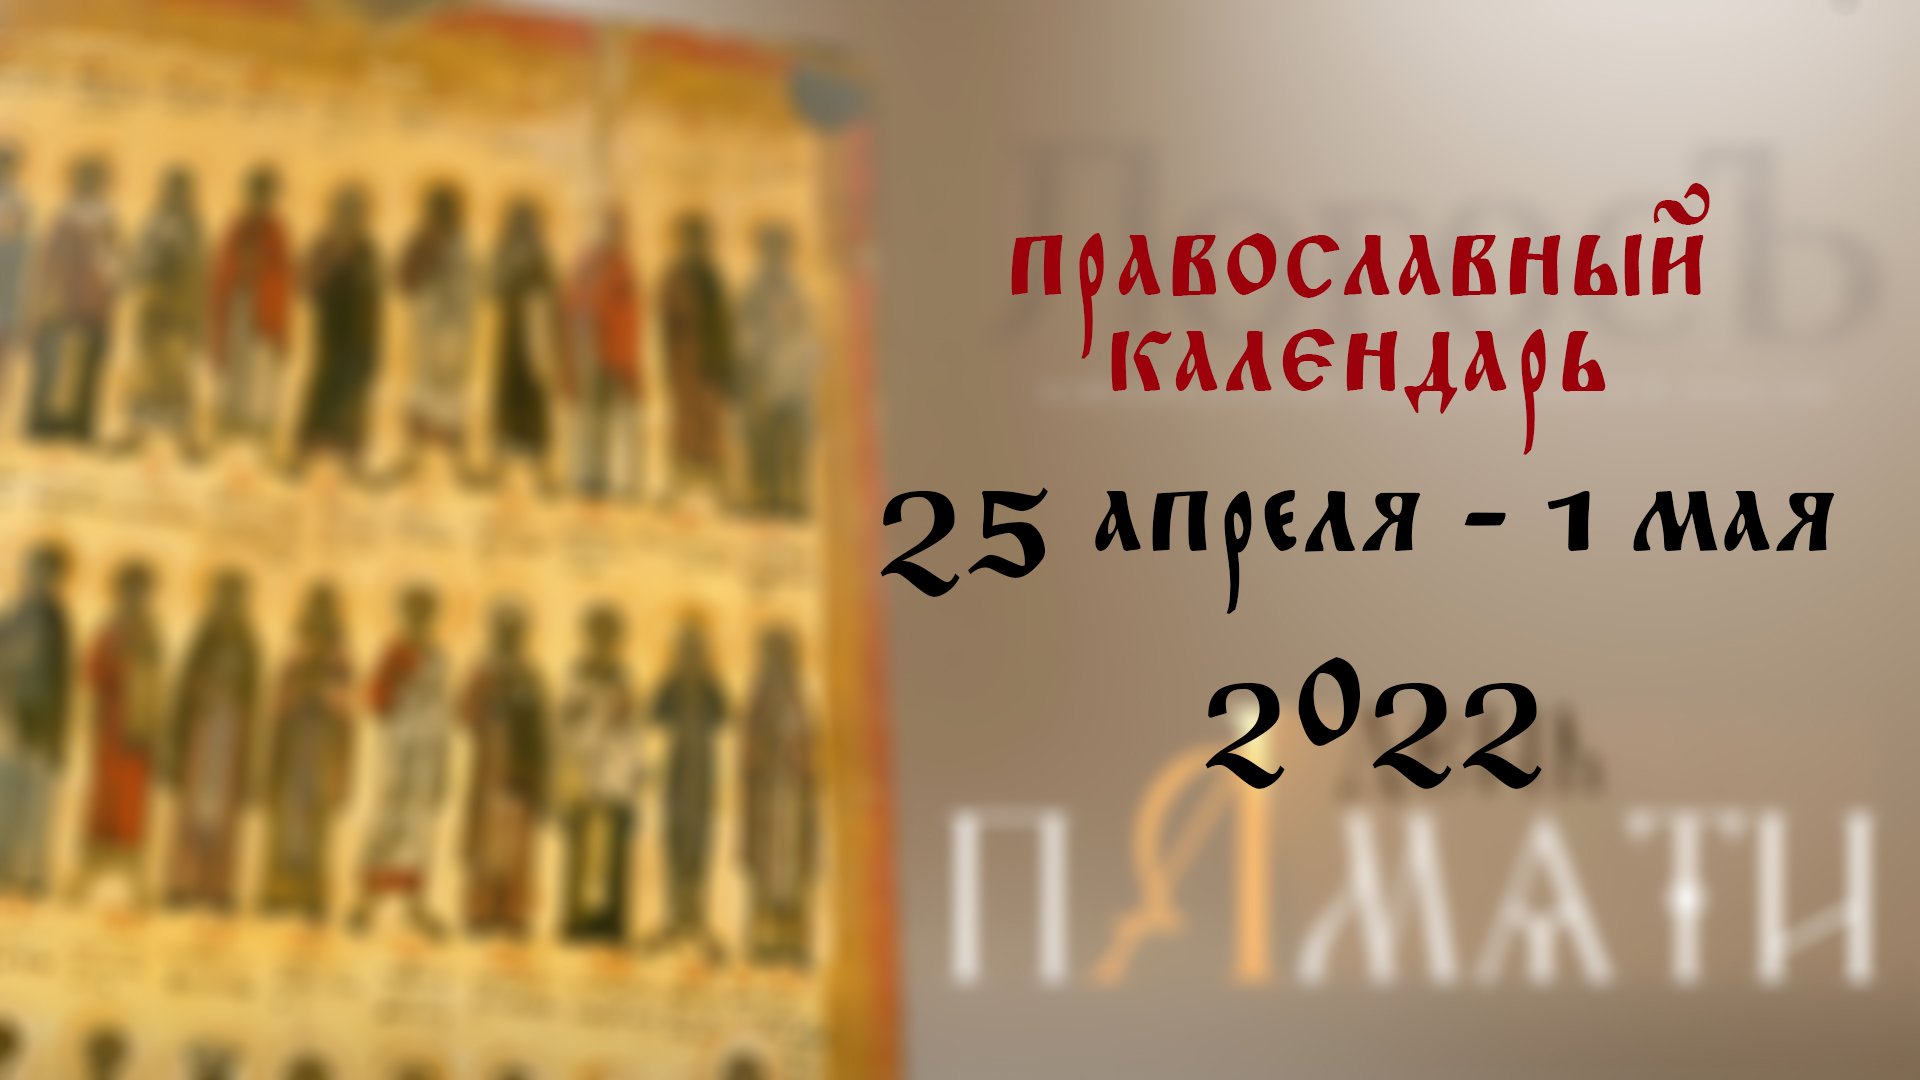 13 апреля православный праздник. С днем памяти святителей московских. С днем 25 июня православный. Большие православные праздники в 2023 году. Православный день 5 апреля.